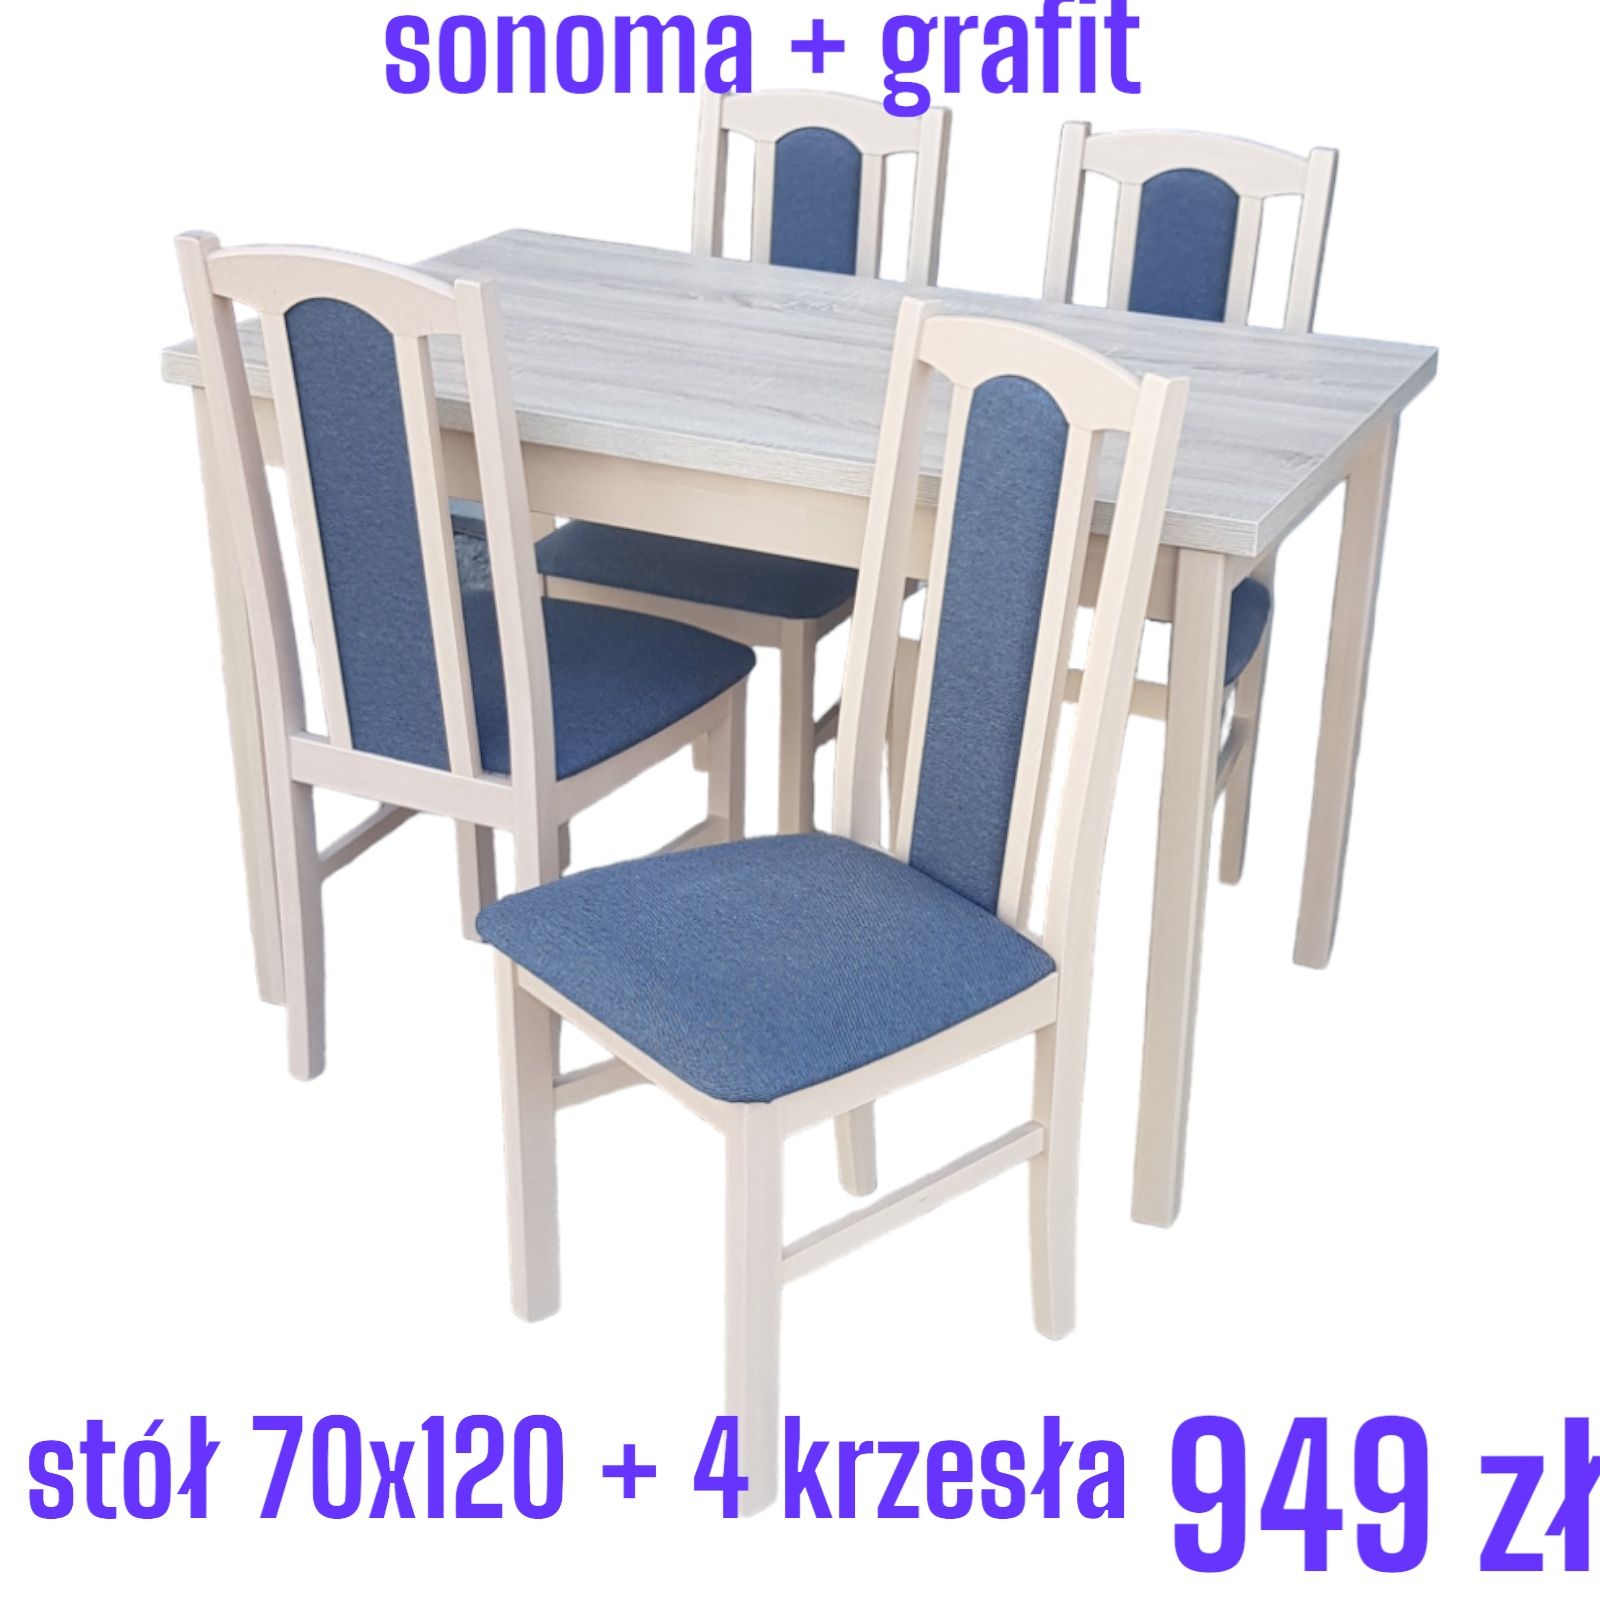 Nowe: Stół 70x120 + 4 krzesła, sonoma + grafit , dostawa cała POLSKA